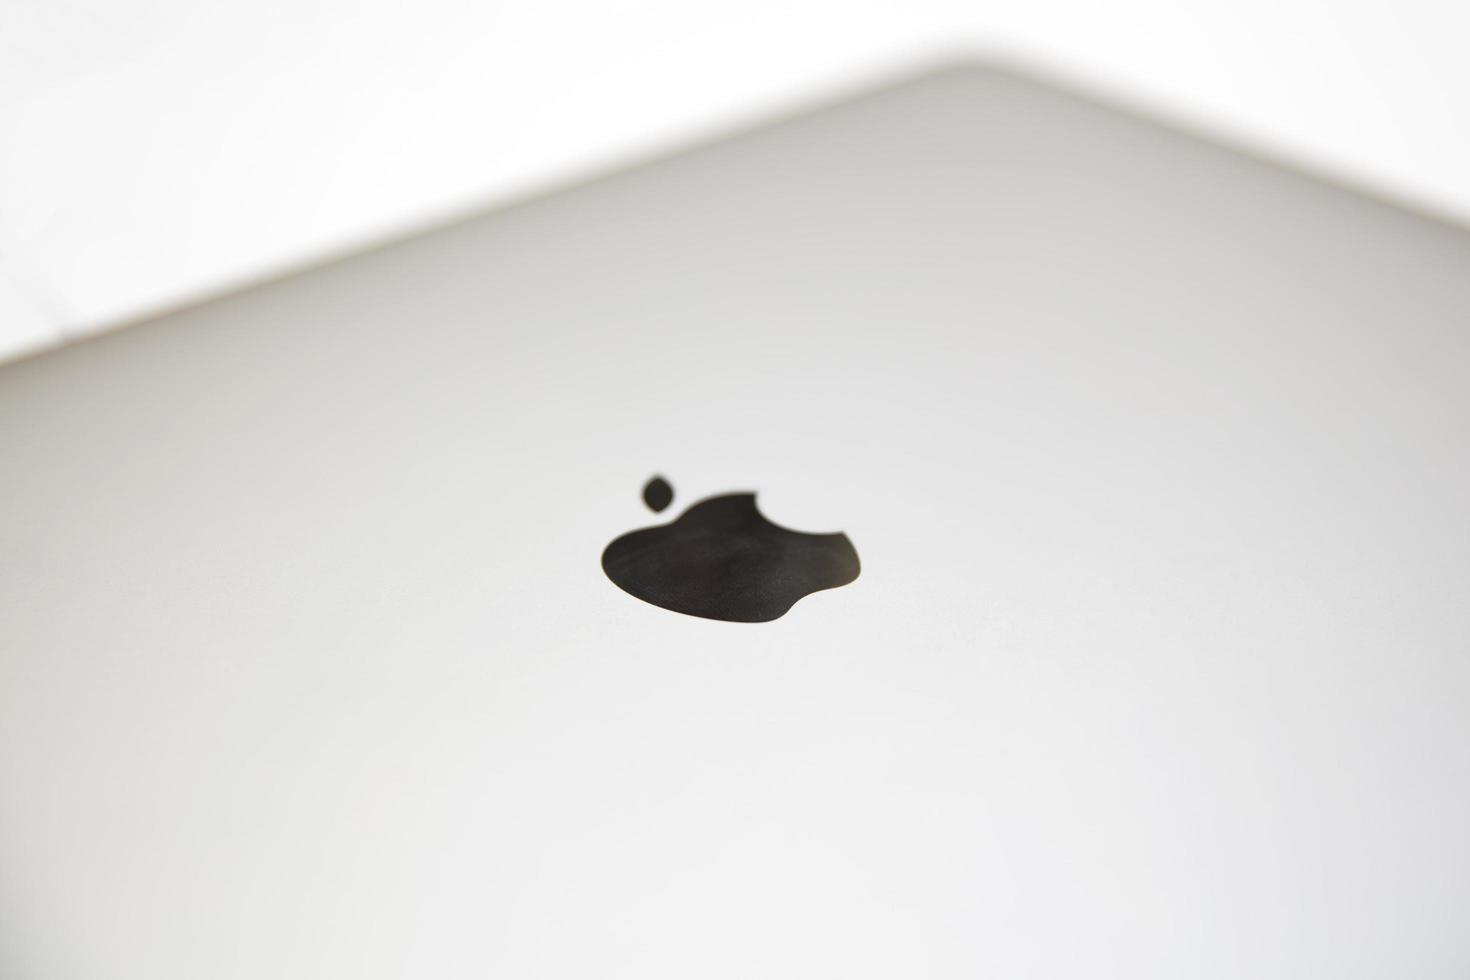 belgrad, serbien, 2020 - detalj från macbook-dator. macbook är ett märke av bärbara datorer tillverkade av apple inc. foto